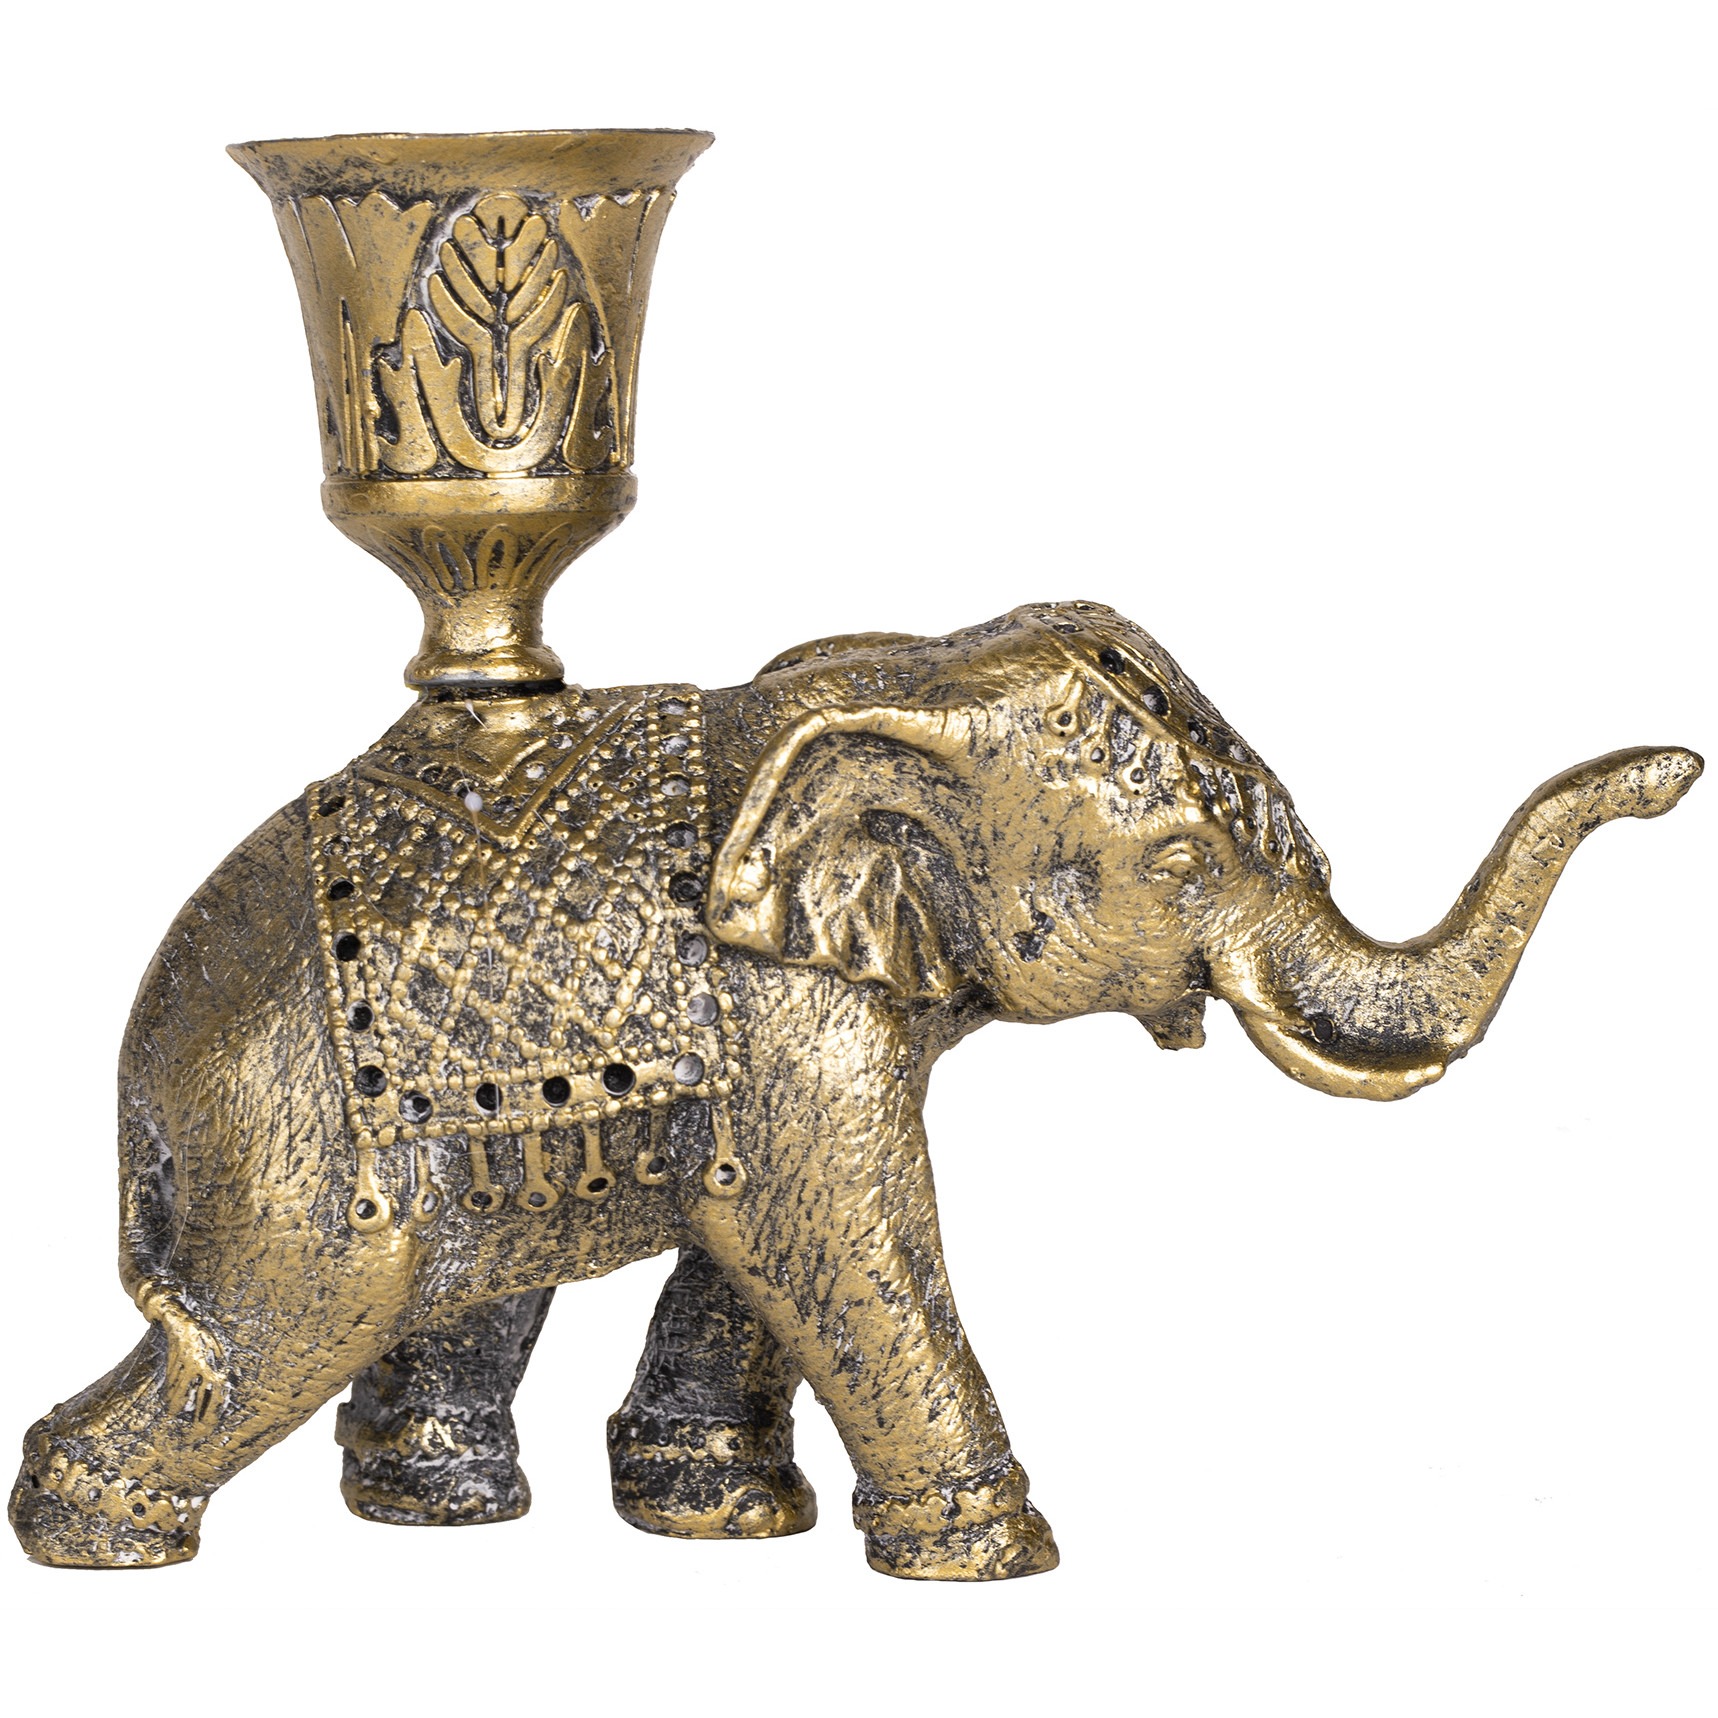 сувенир полистоун подсвечник зеркальные вставки индийский слон на камне 12 5х6 5х3 см Подсвечник Glasar Слон 13х5х11 см